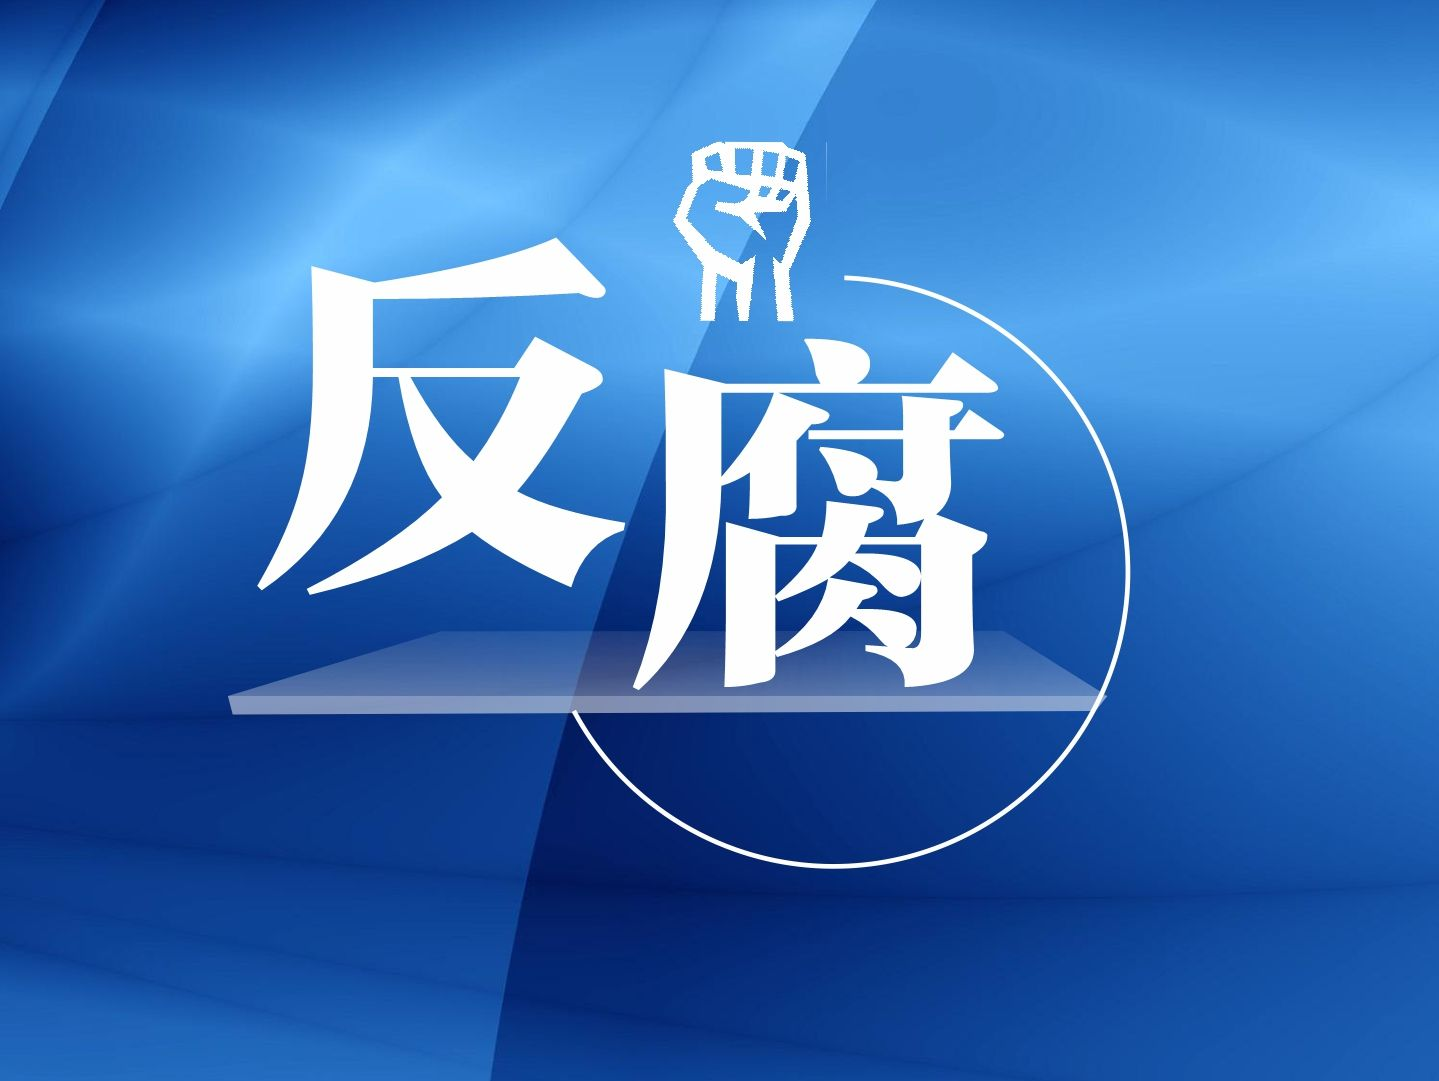 中国人寿财产保险股份有限公司原党委书记、总裁刘安林接受纪律审查和监察调查